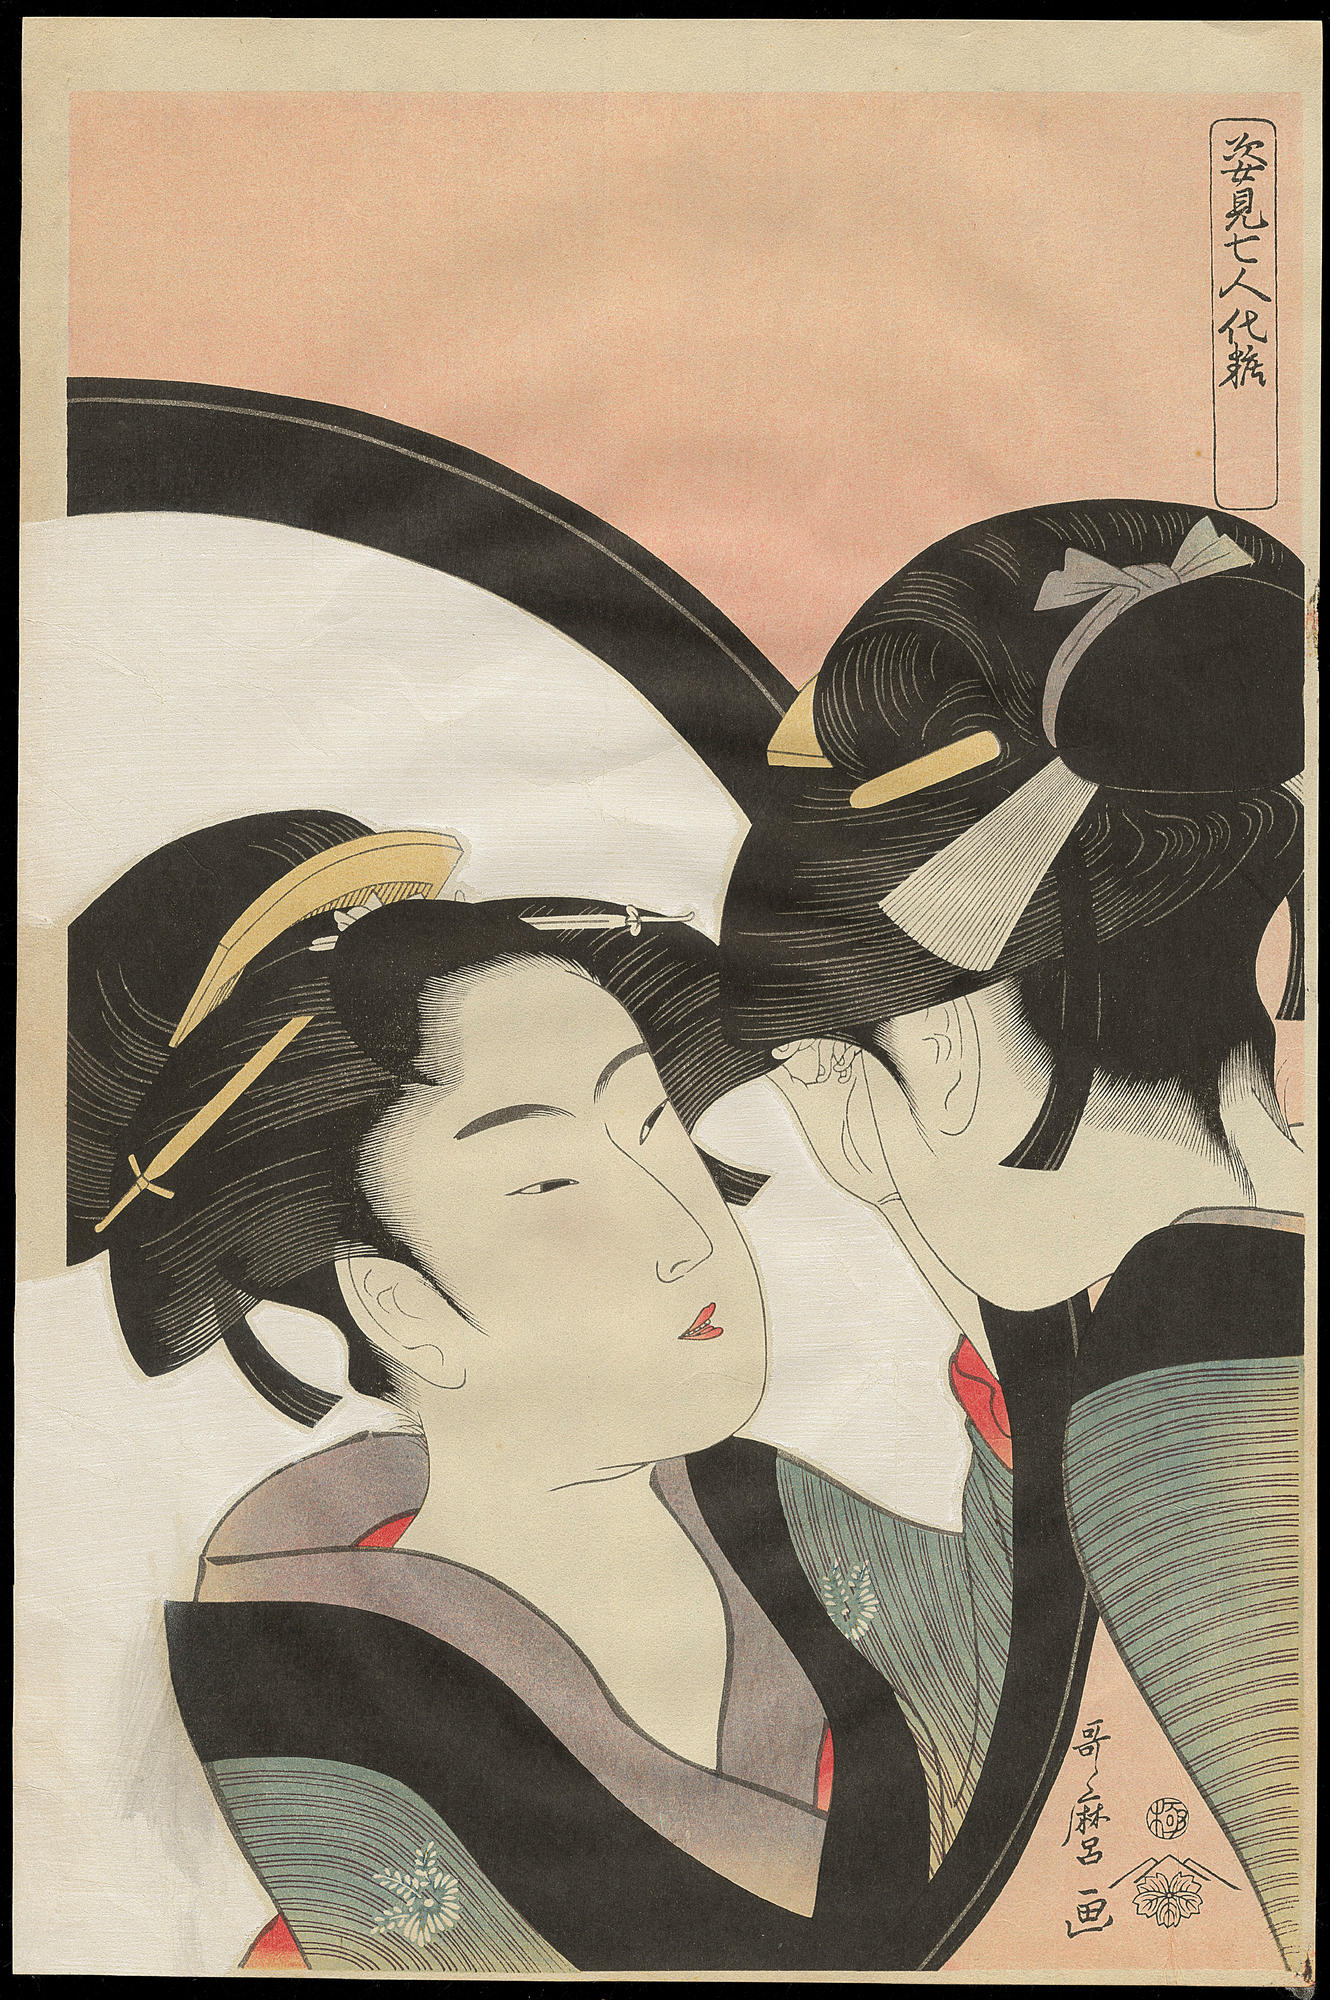 Kitagawa Utamaro - c. 1753 - October 31, 1806